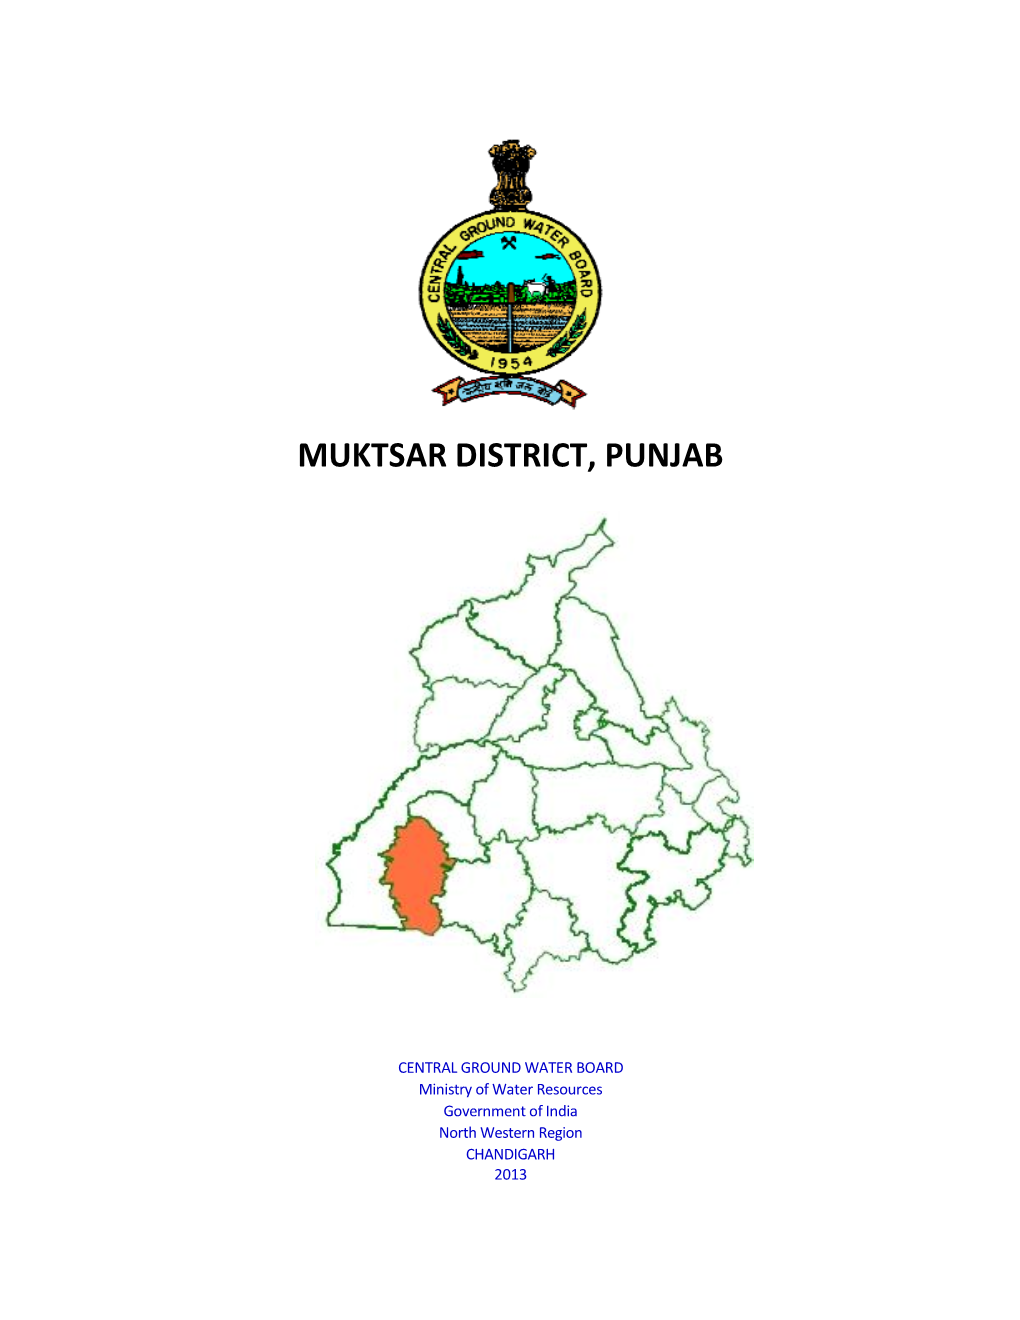 Muktsar District, Punjab